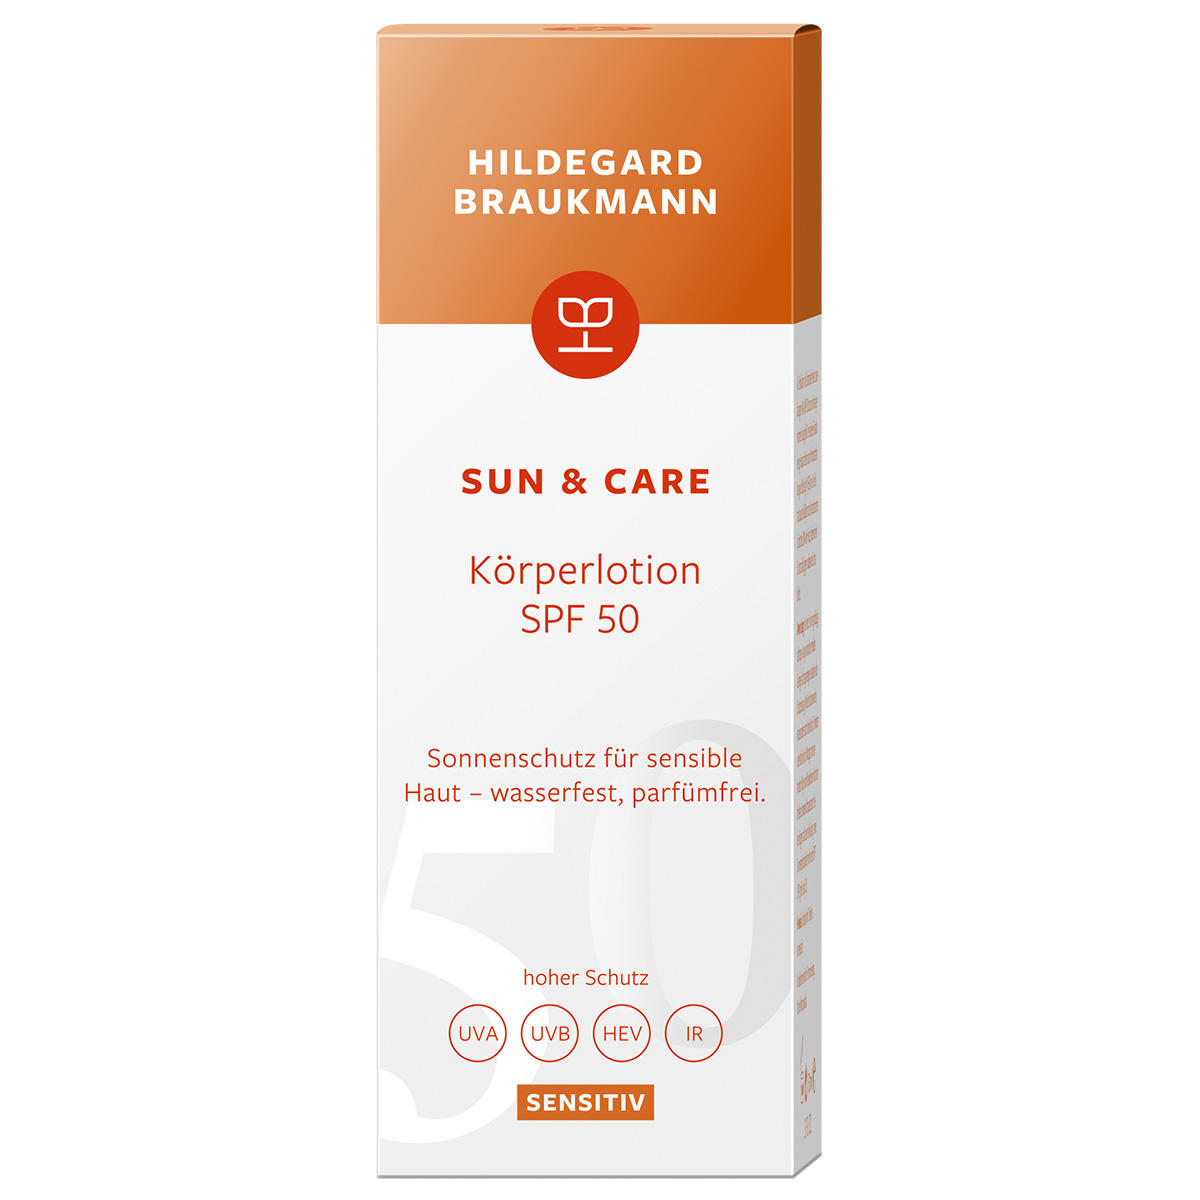 Hildegard Braukmann sun & care Sensitiv Körperlotion SPF 50 150 ml - 2